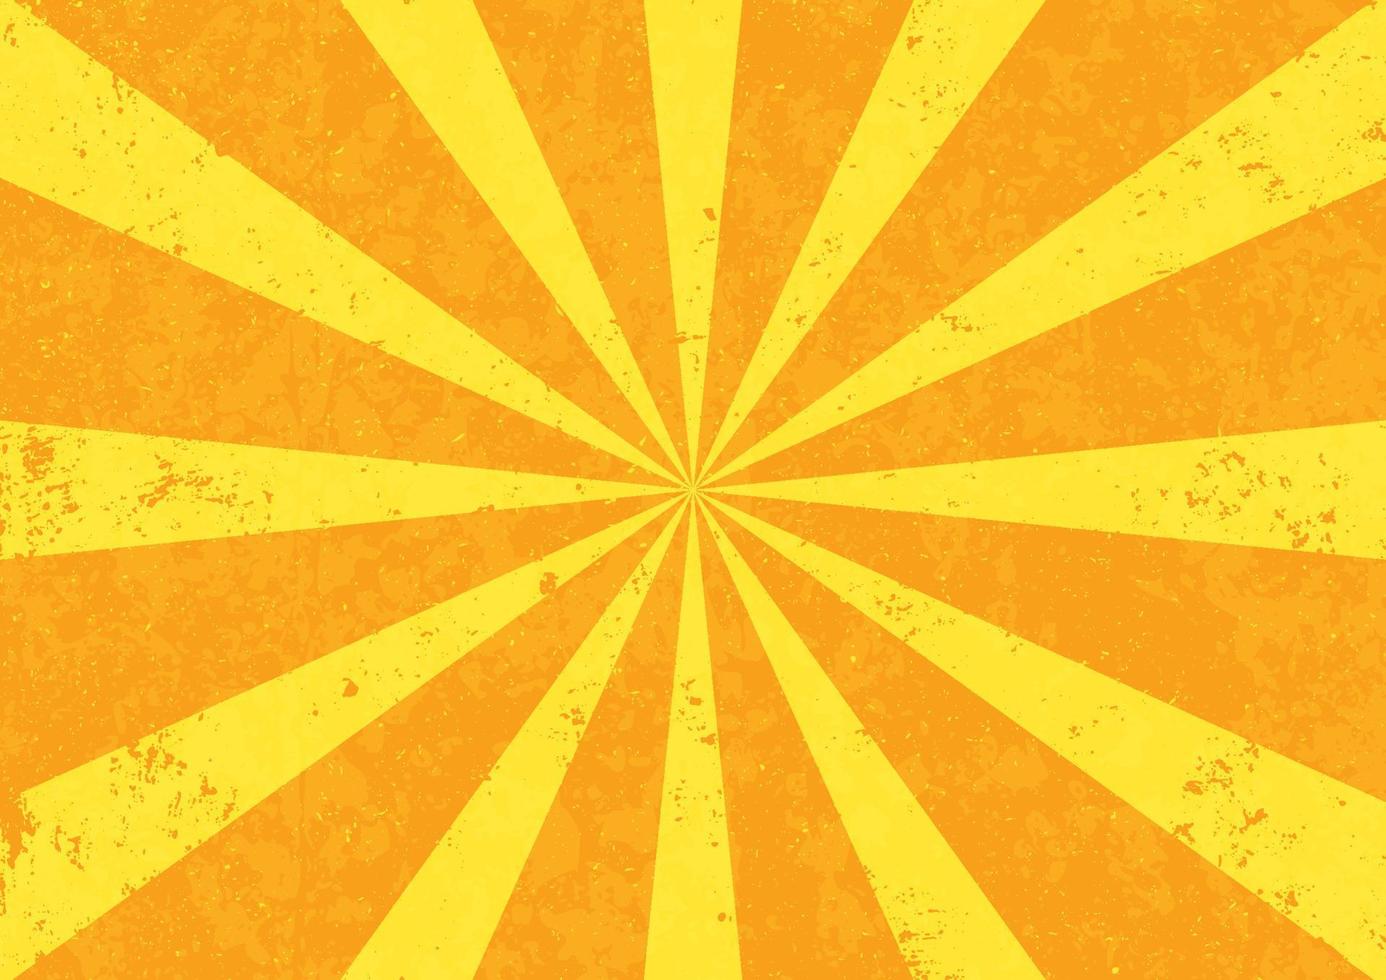 Sunburst with grunge texture background vector